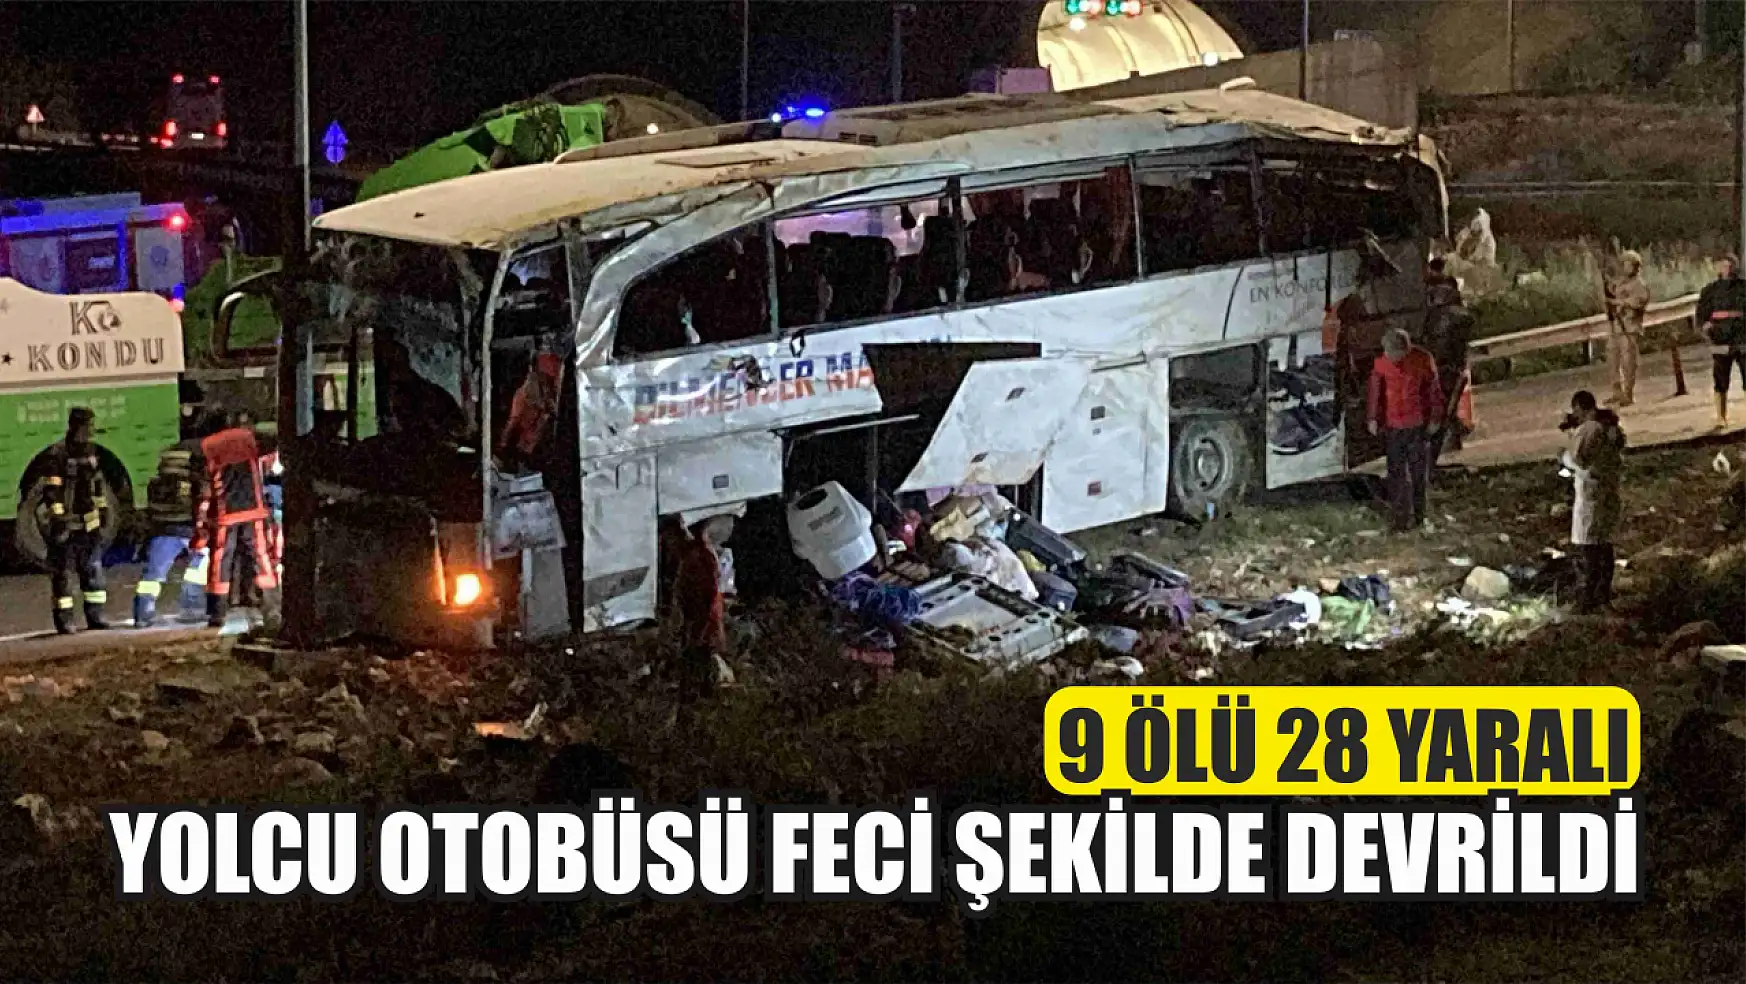 Yolcu otobüsü feci şekilde devrildi, 9 ölü 28 yaralı